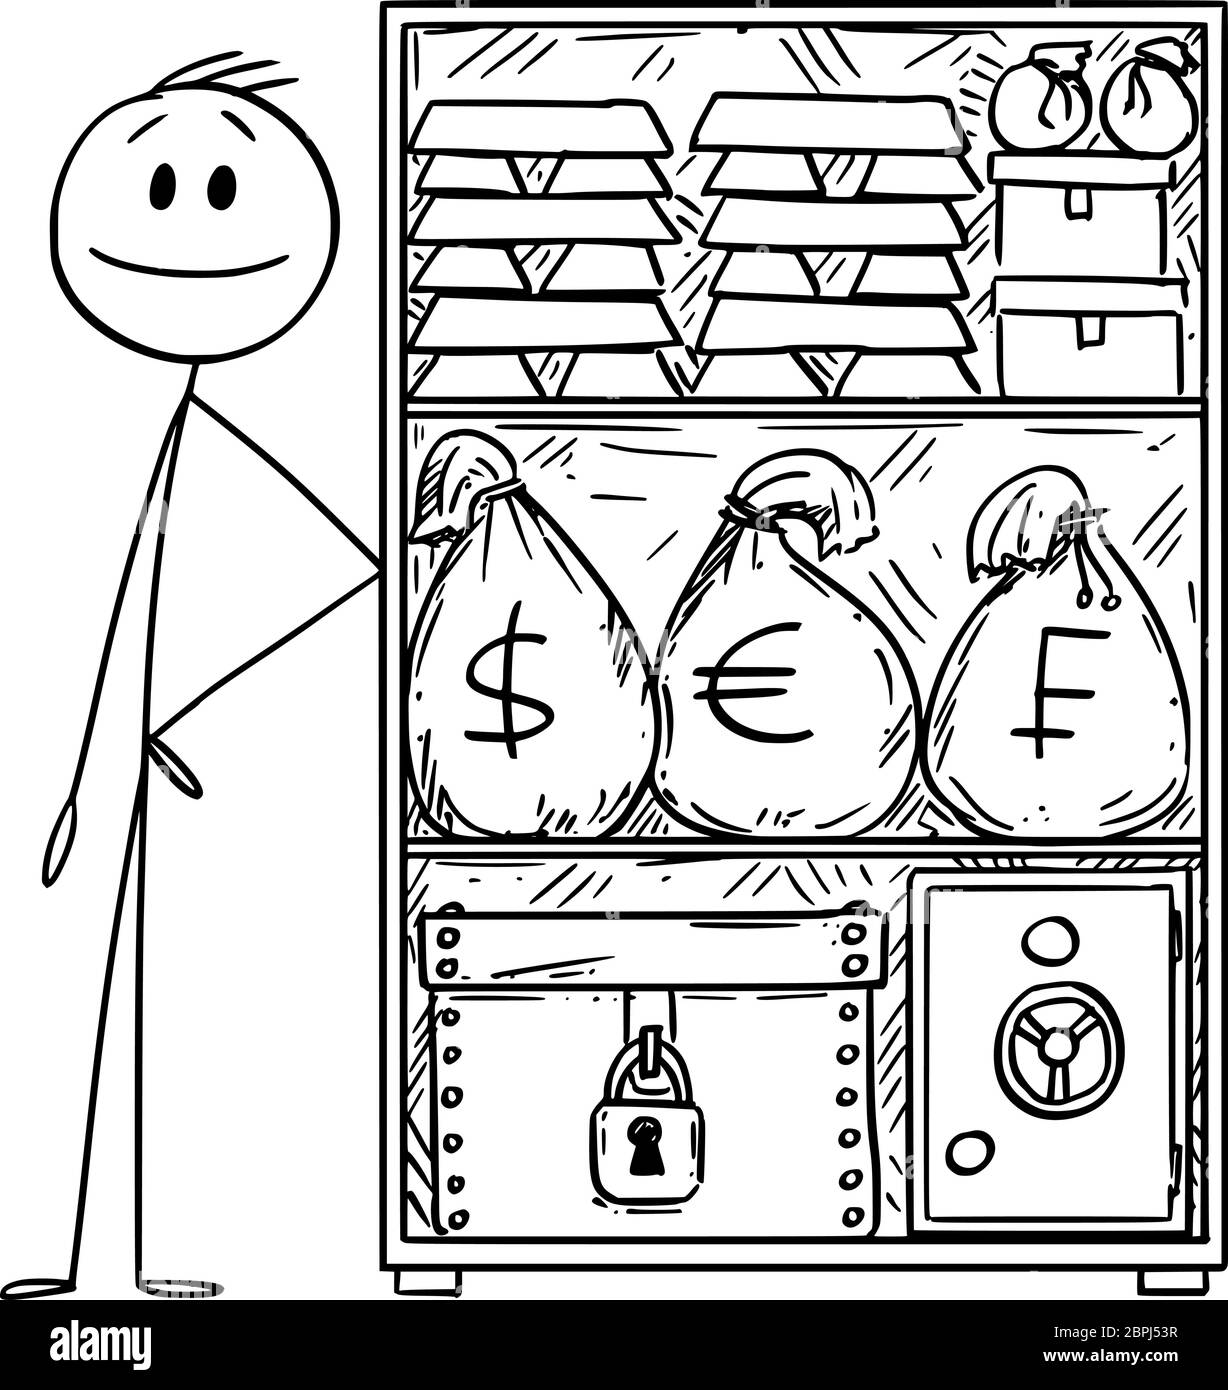 Vektor Cartoon Stick Figur Zeichnung konzeptionelle Illustration von reichen oder reichen Mann mit Vorrat an Geld und Gold für die Krise. Stock Vektor